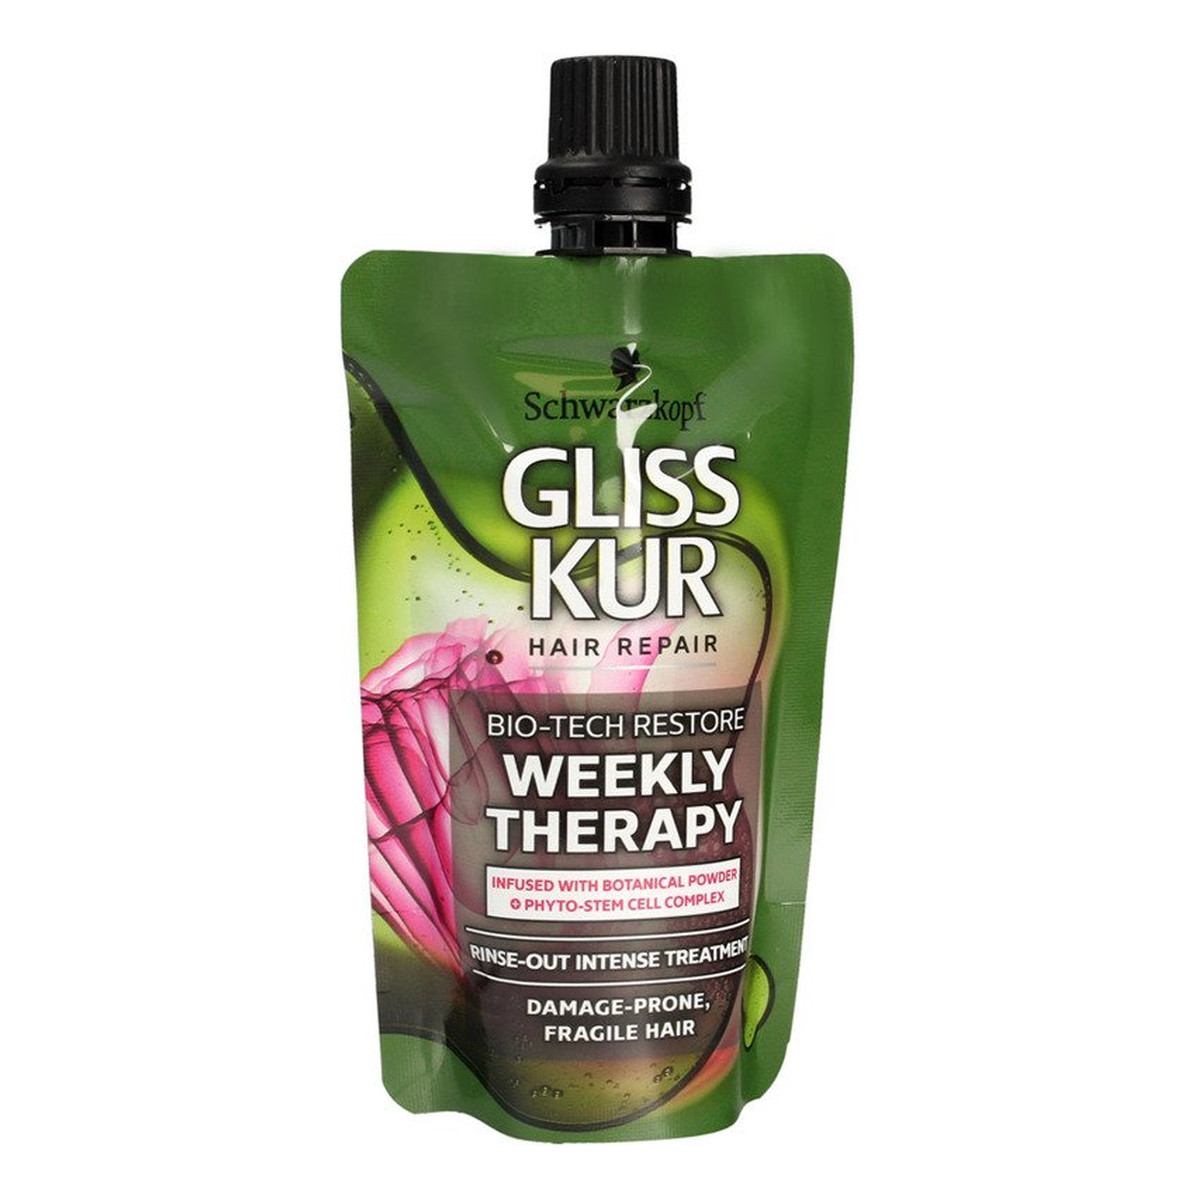 Gliss Bio-Tech Restore Weekly Therapy intensywna odżywka do włosów delikatnych i podatnych na zniszczenia 50ml